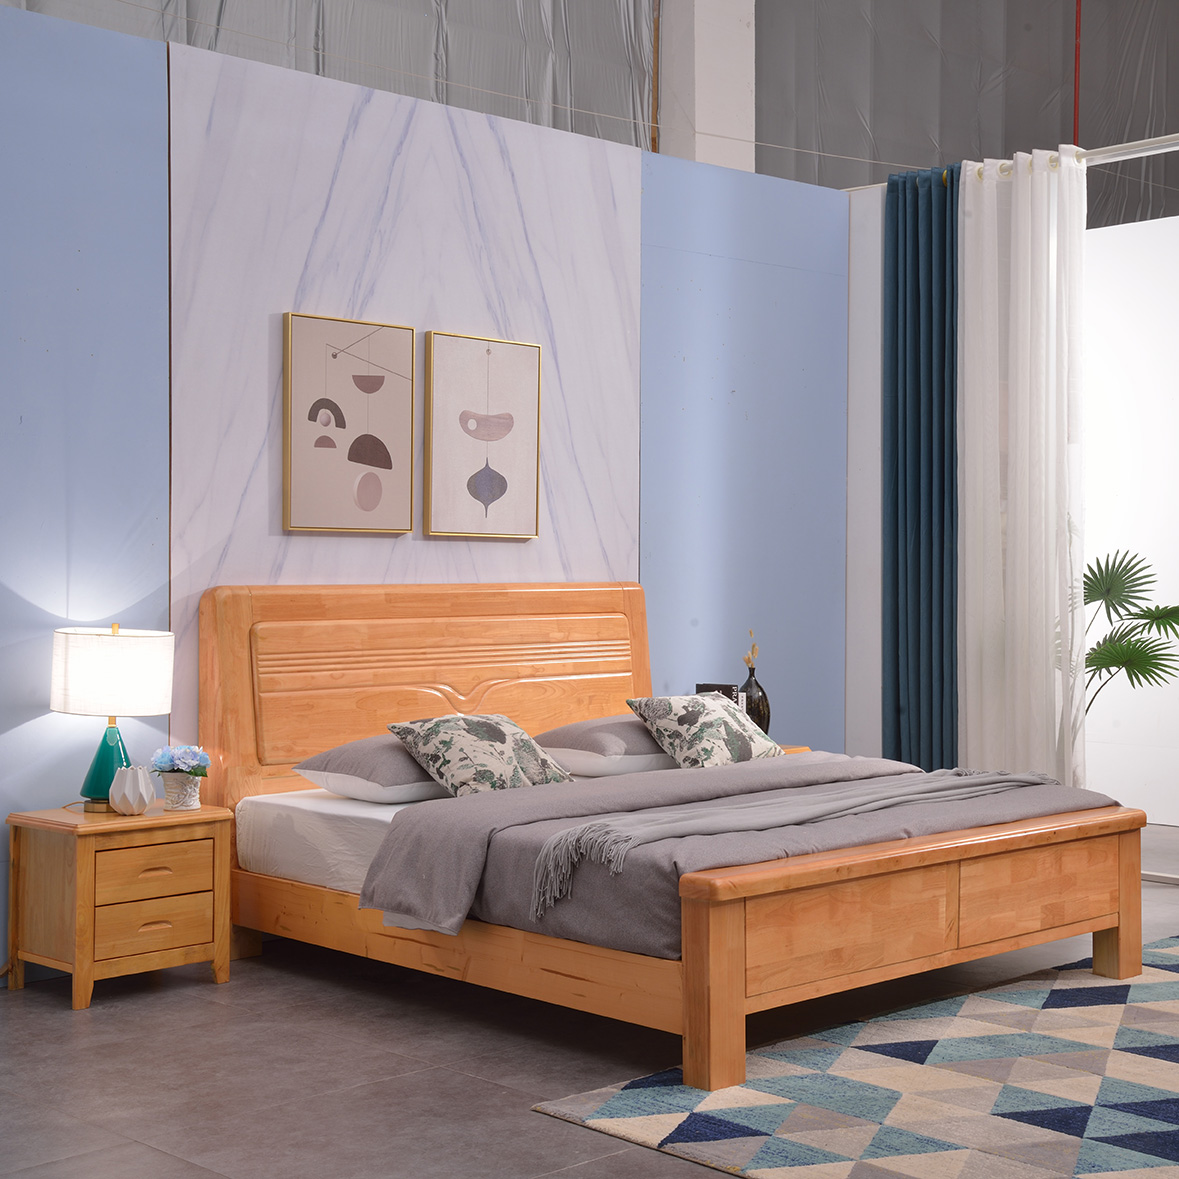 现代简约实木床橡胶木床大床1.8米双人床公主床经济实用型